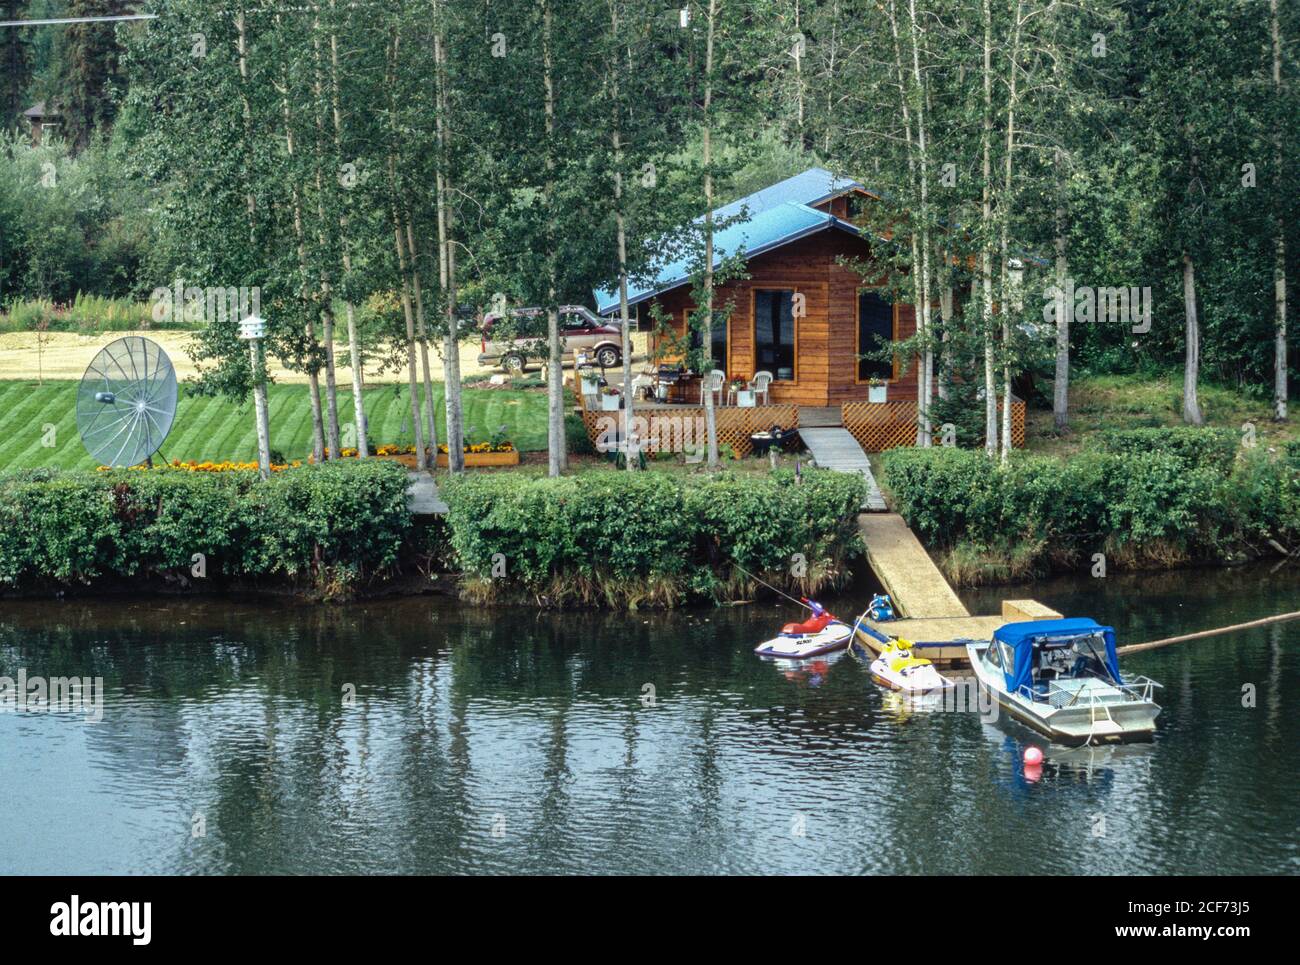 Fairbanks, Alaska, USA. Alaskan Lifestyle, Tanana River Outskirts of Fairbanks. Stock Photo